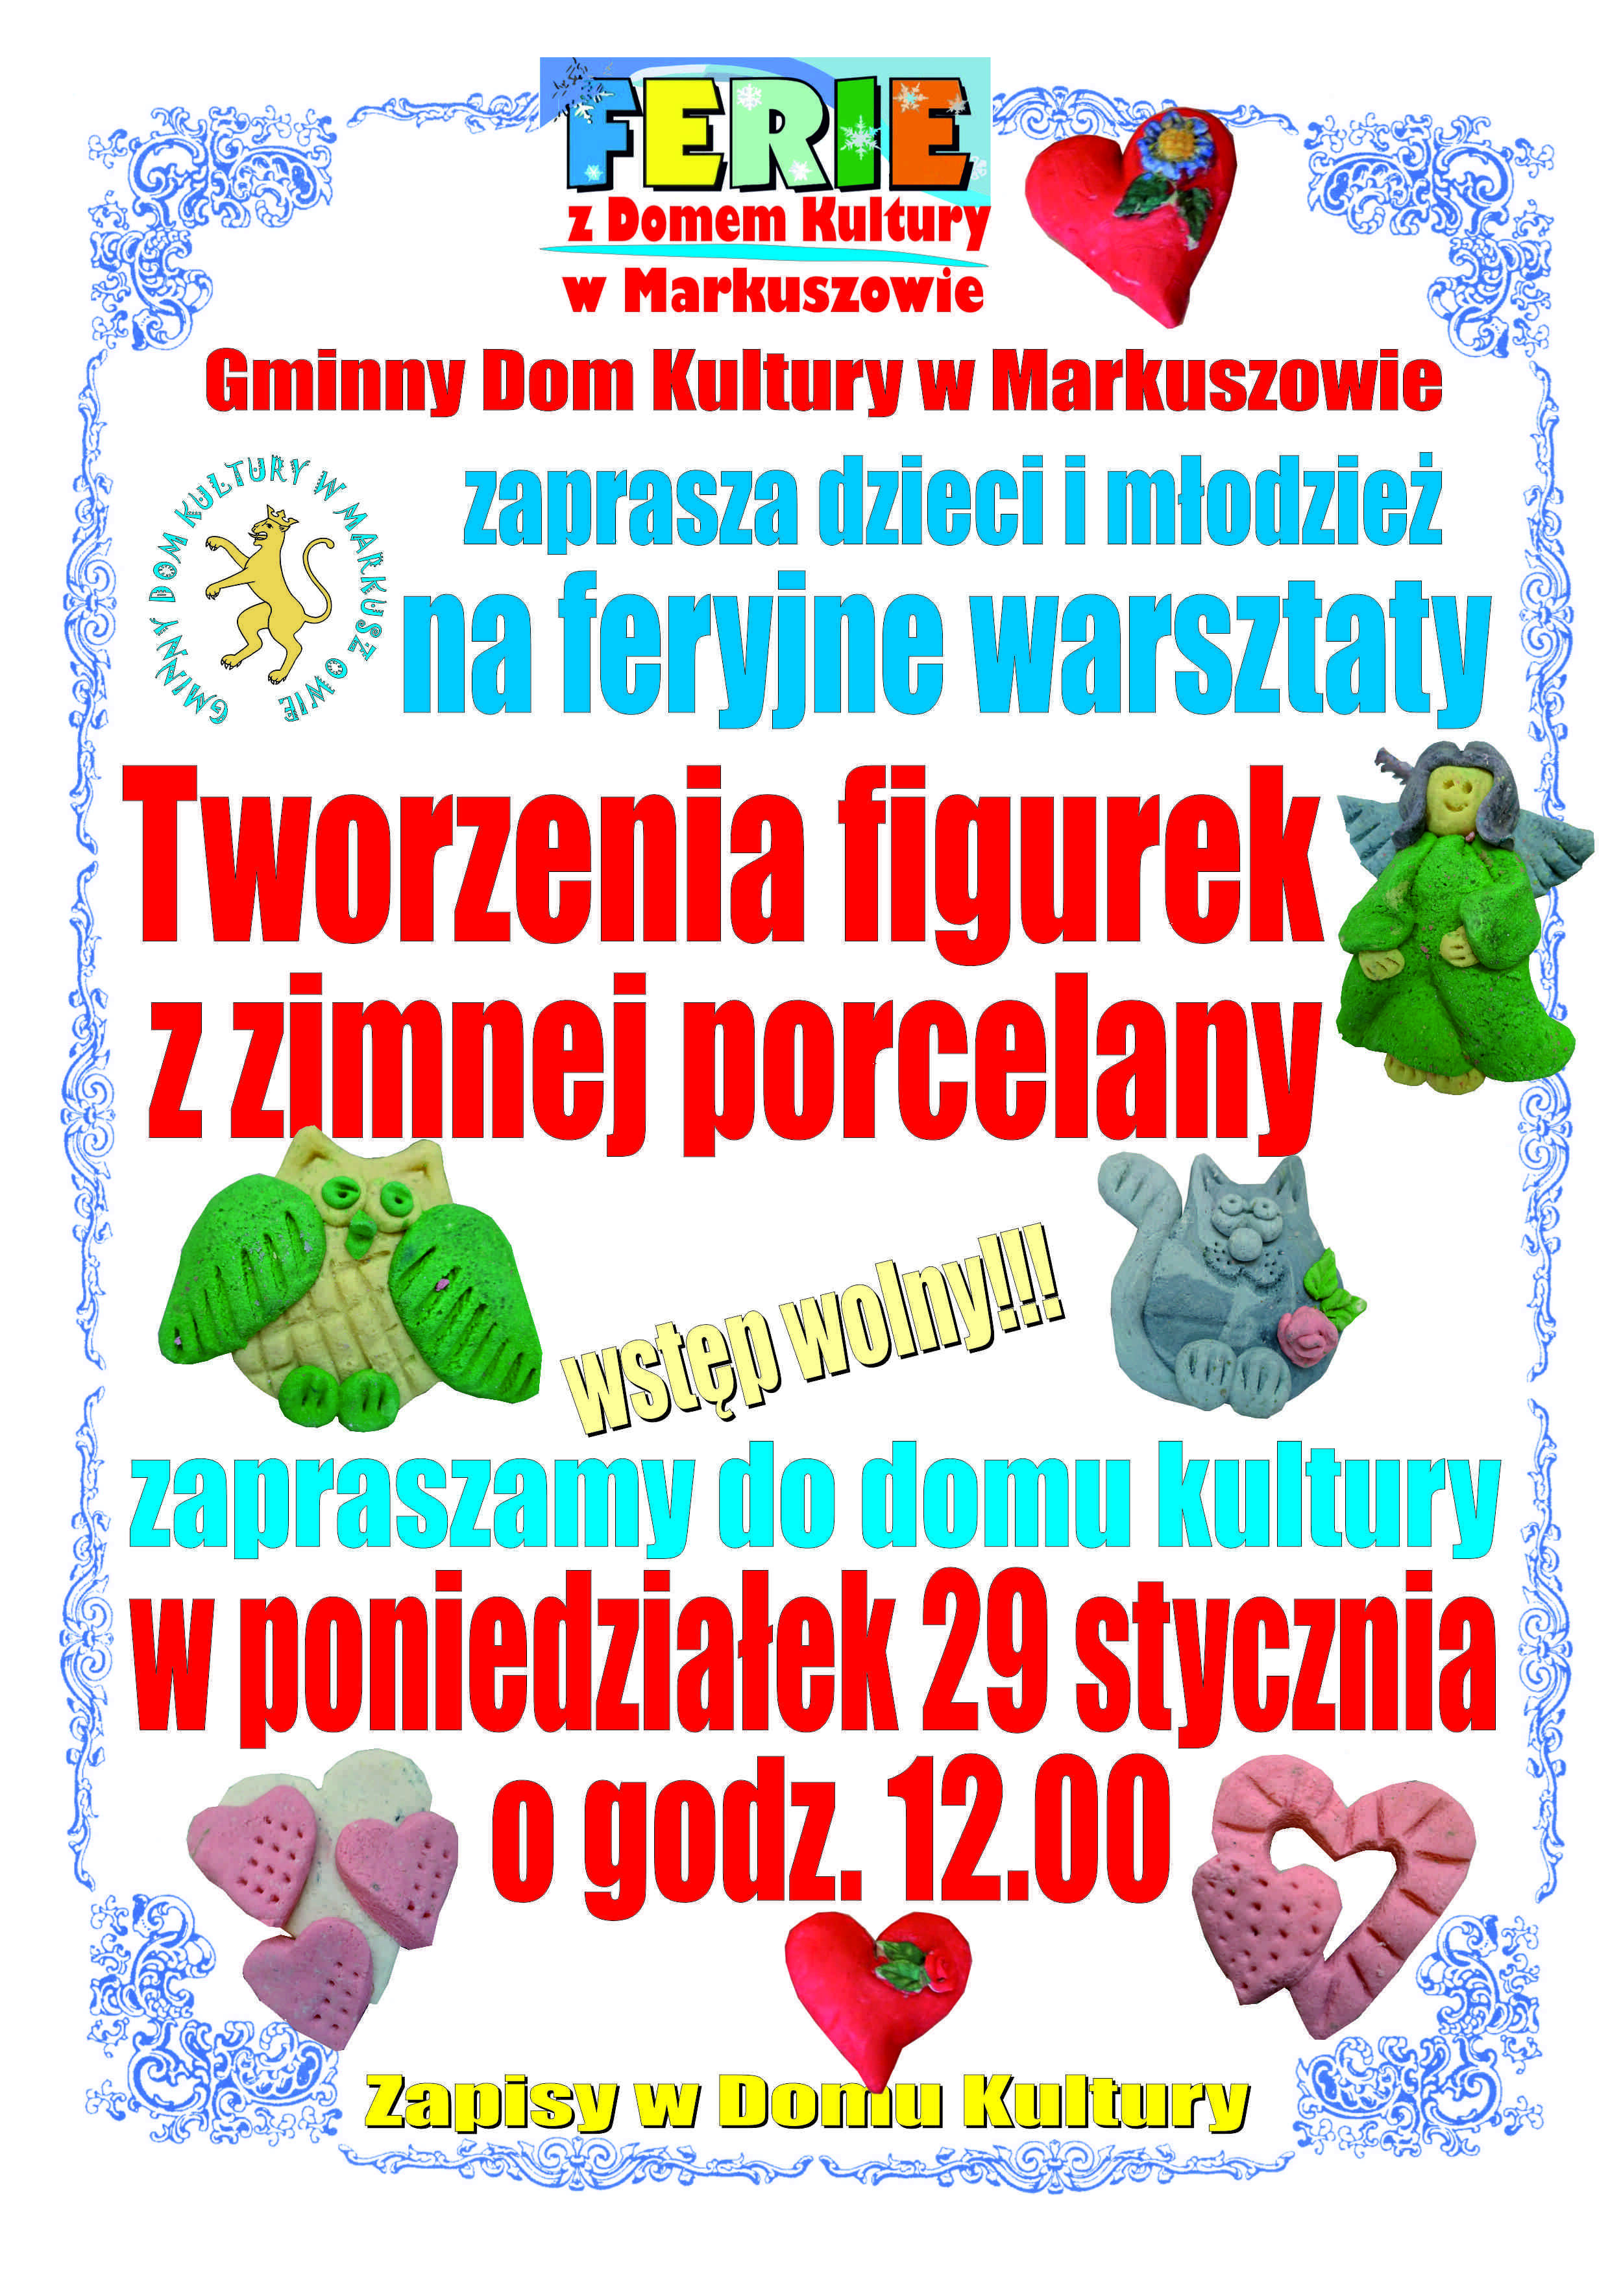 Plakat wydarzenia z kolorowymi literami i grafikami przedstawiający informacje o warsztatach tworzenia figurek z zimnej porcelany, skierowany do dzieci i młodzieży, w Gminnym Domu Kultury.